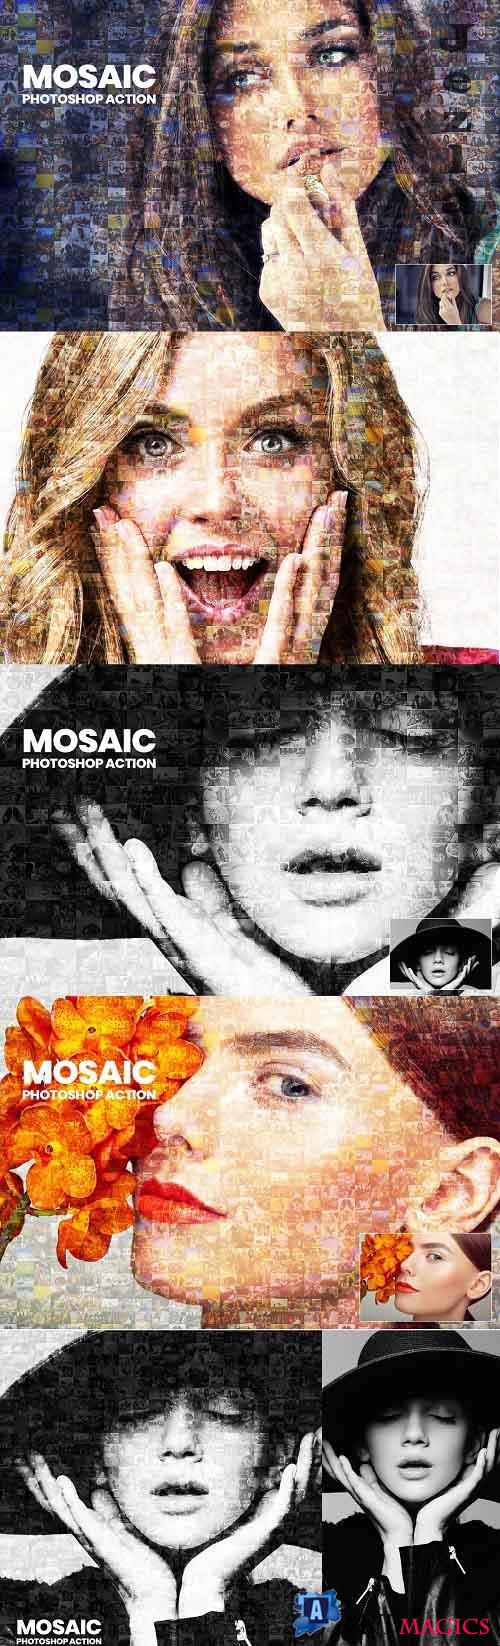 Mosaic Photo Photoshop Action - 3136015